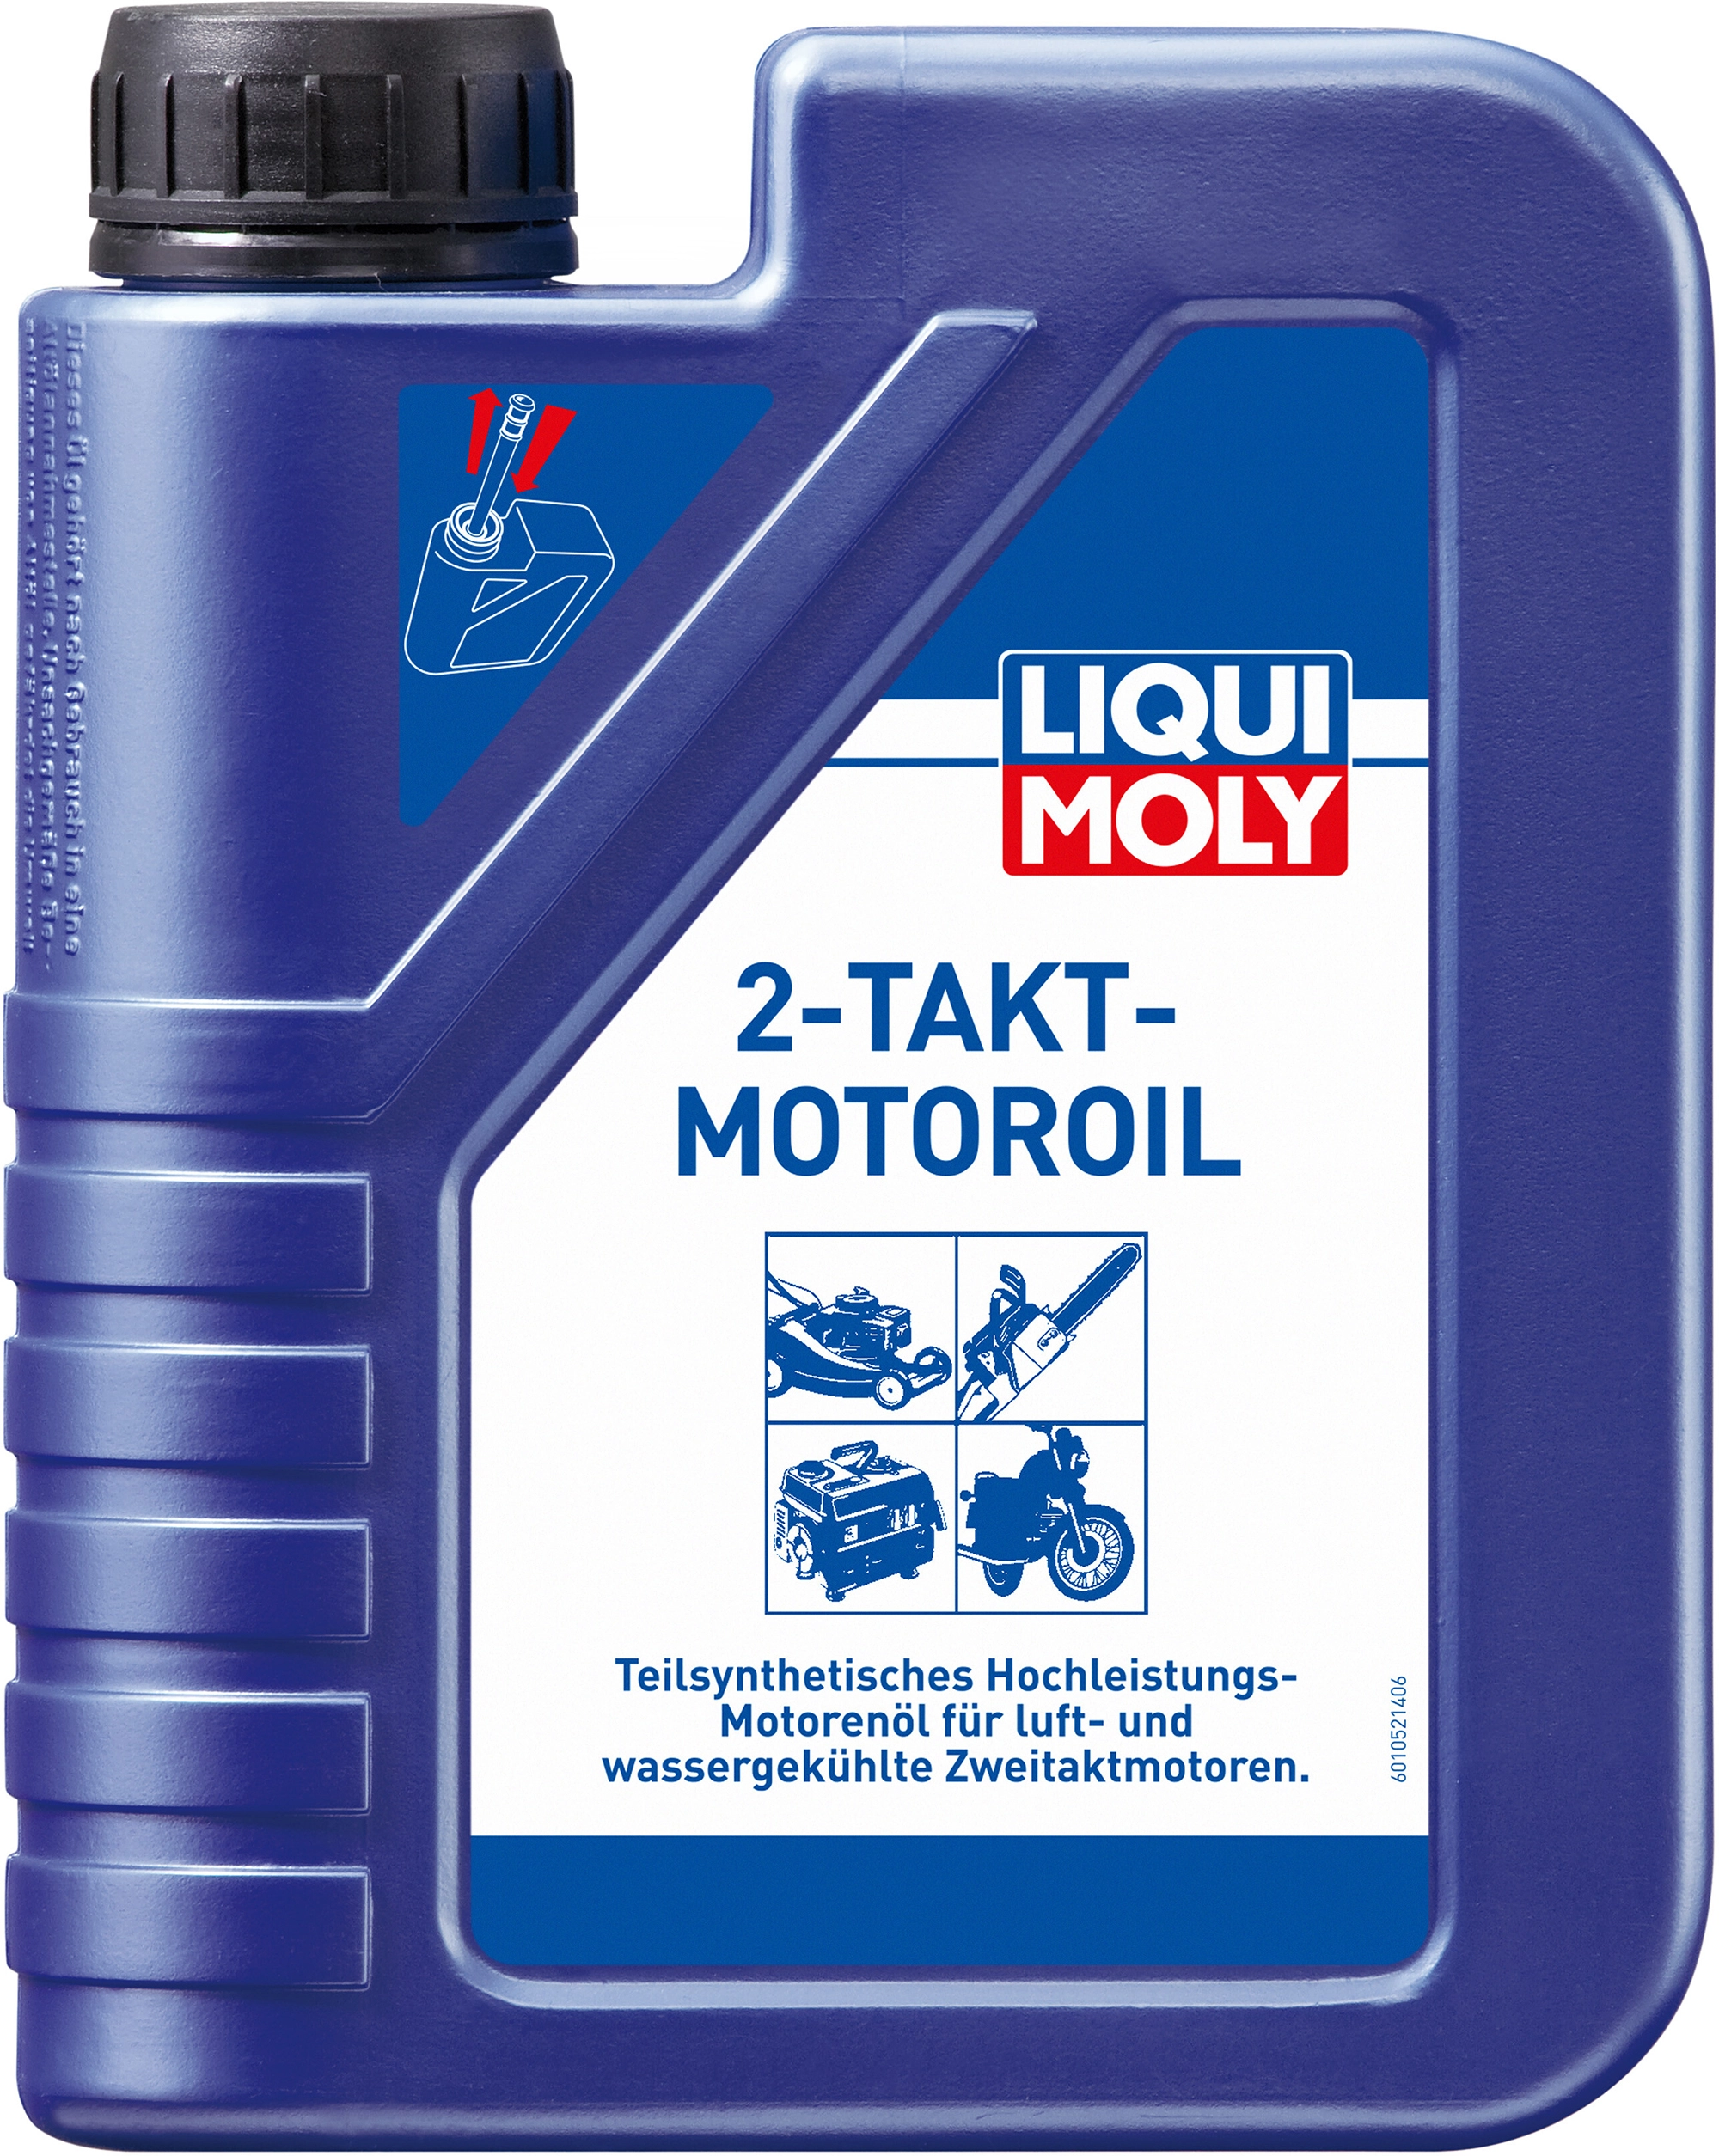 Liqui Moly Katalysatorschutz 300 ml kaufen bei OBI